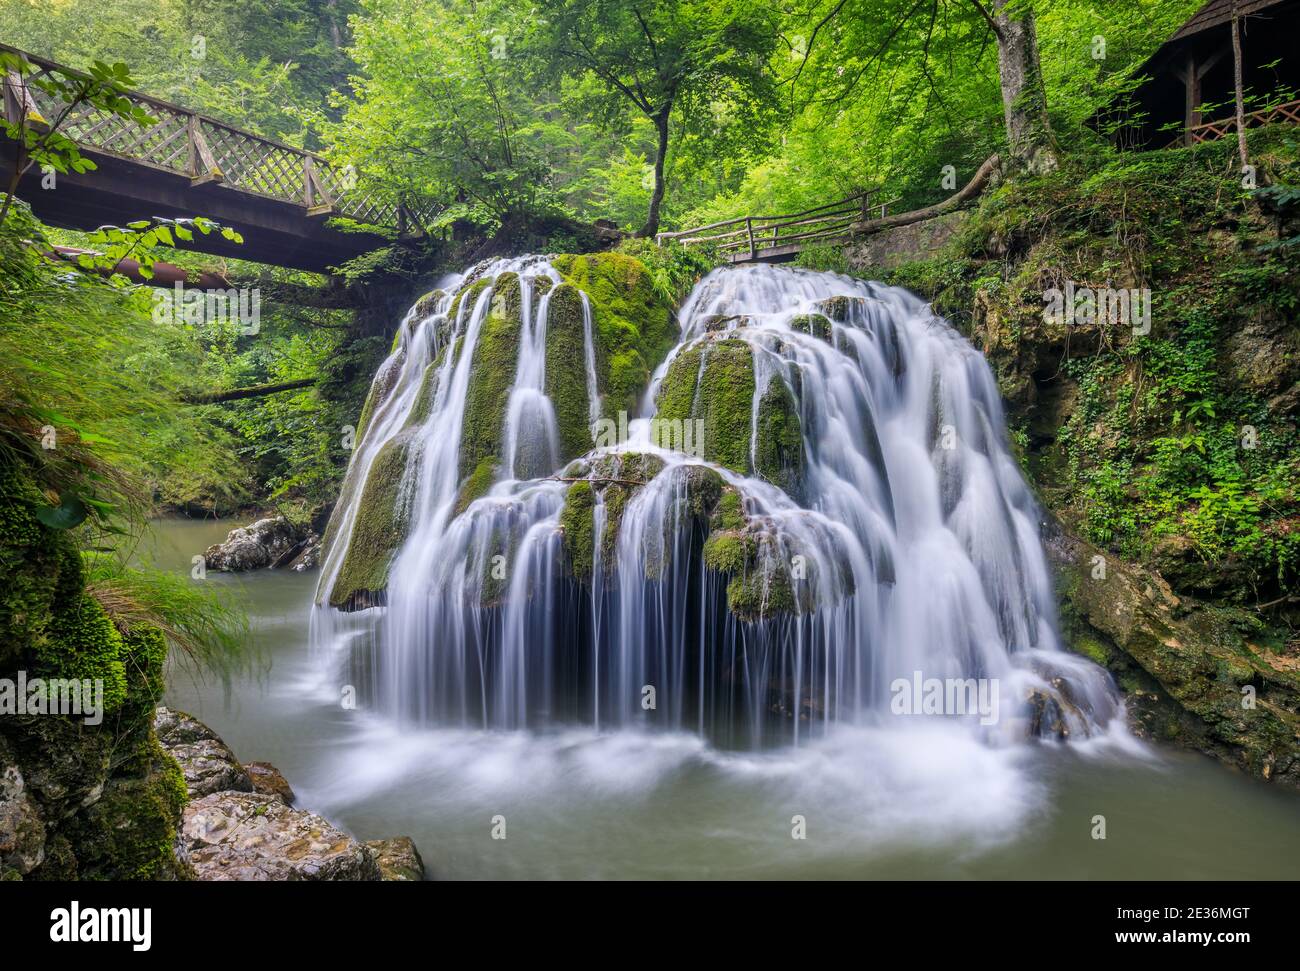 Bigar Wasserfall einer der schönsten Wasserfälle der Welt. Rumänien. Stockfoto